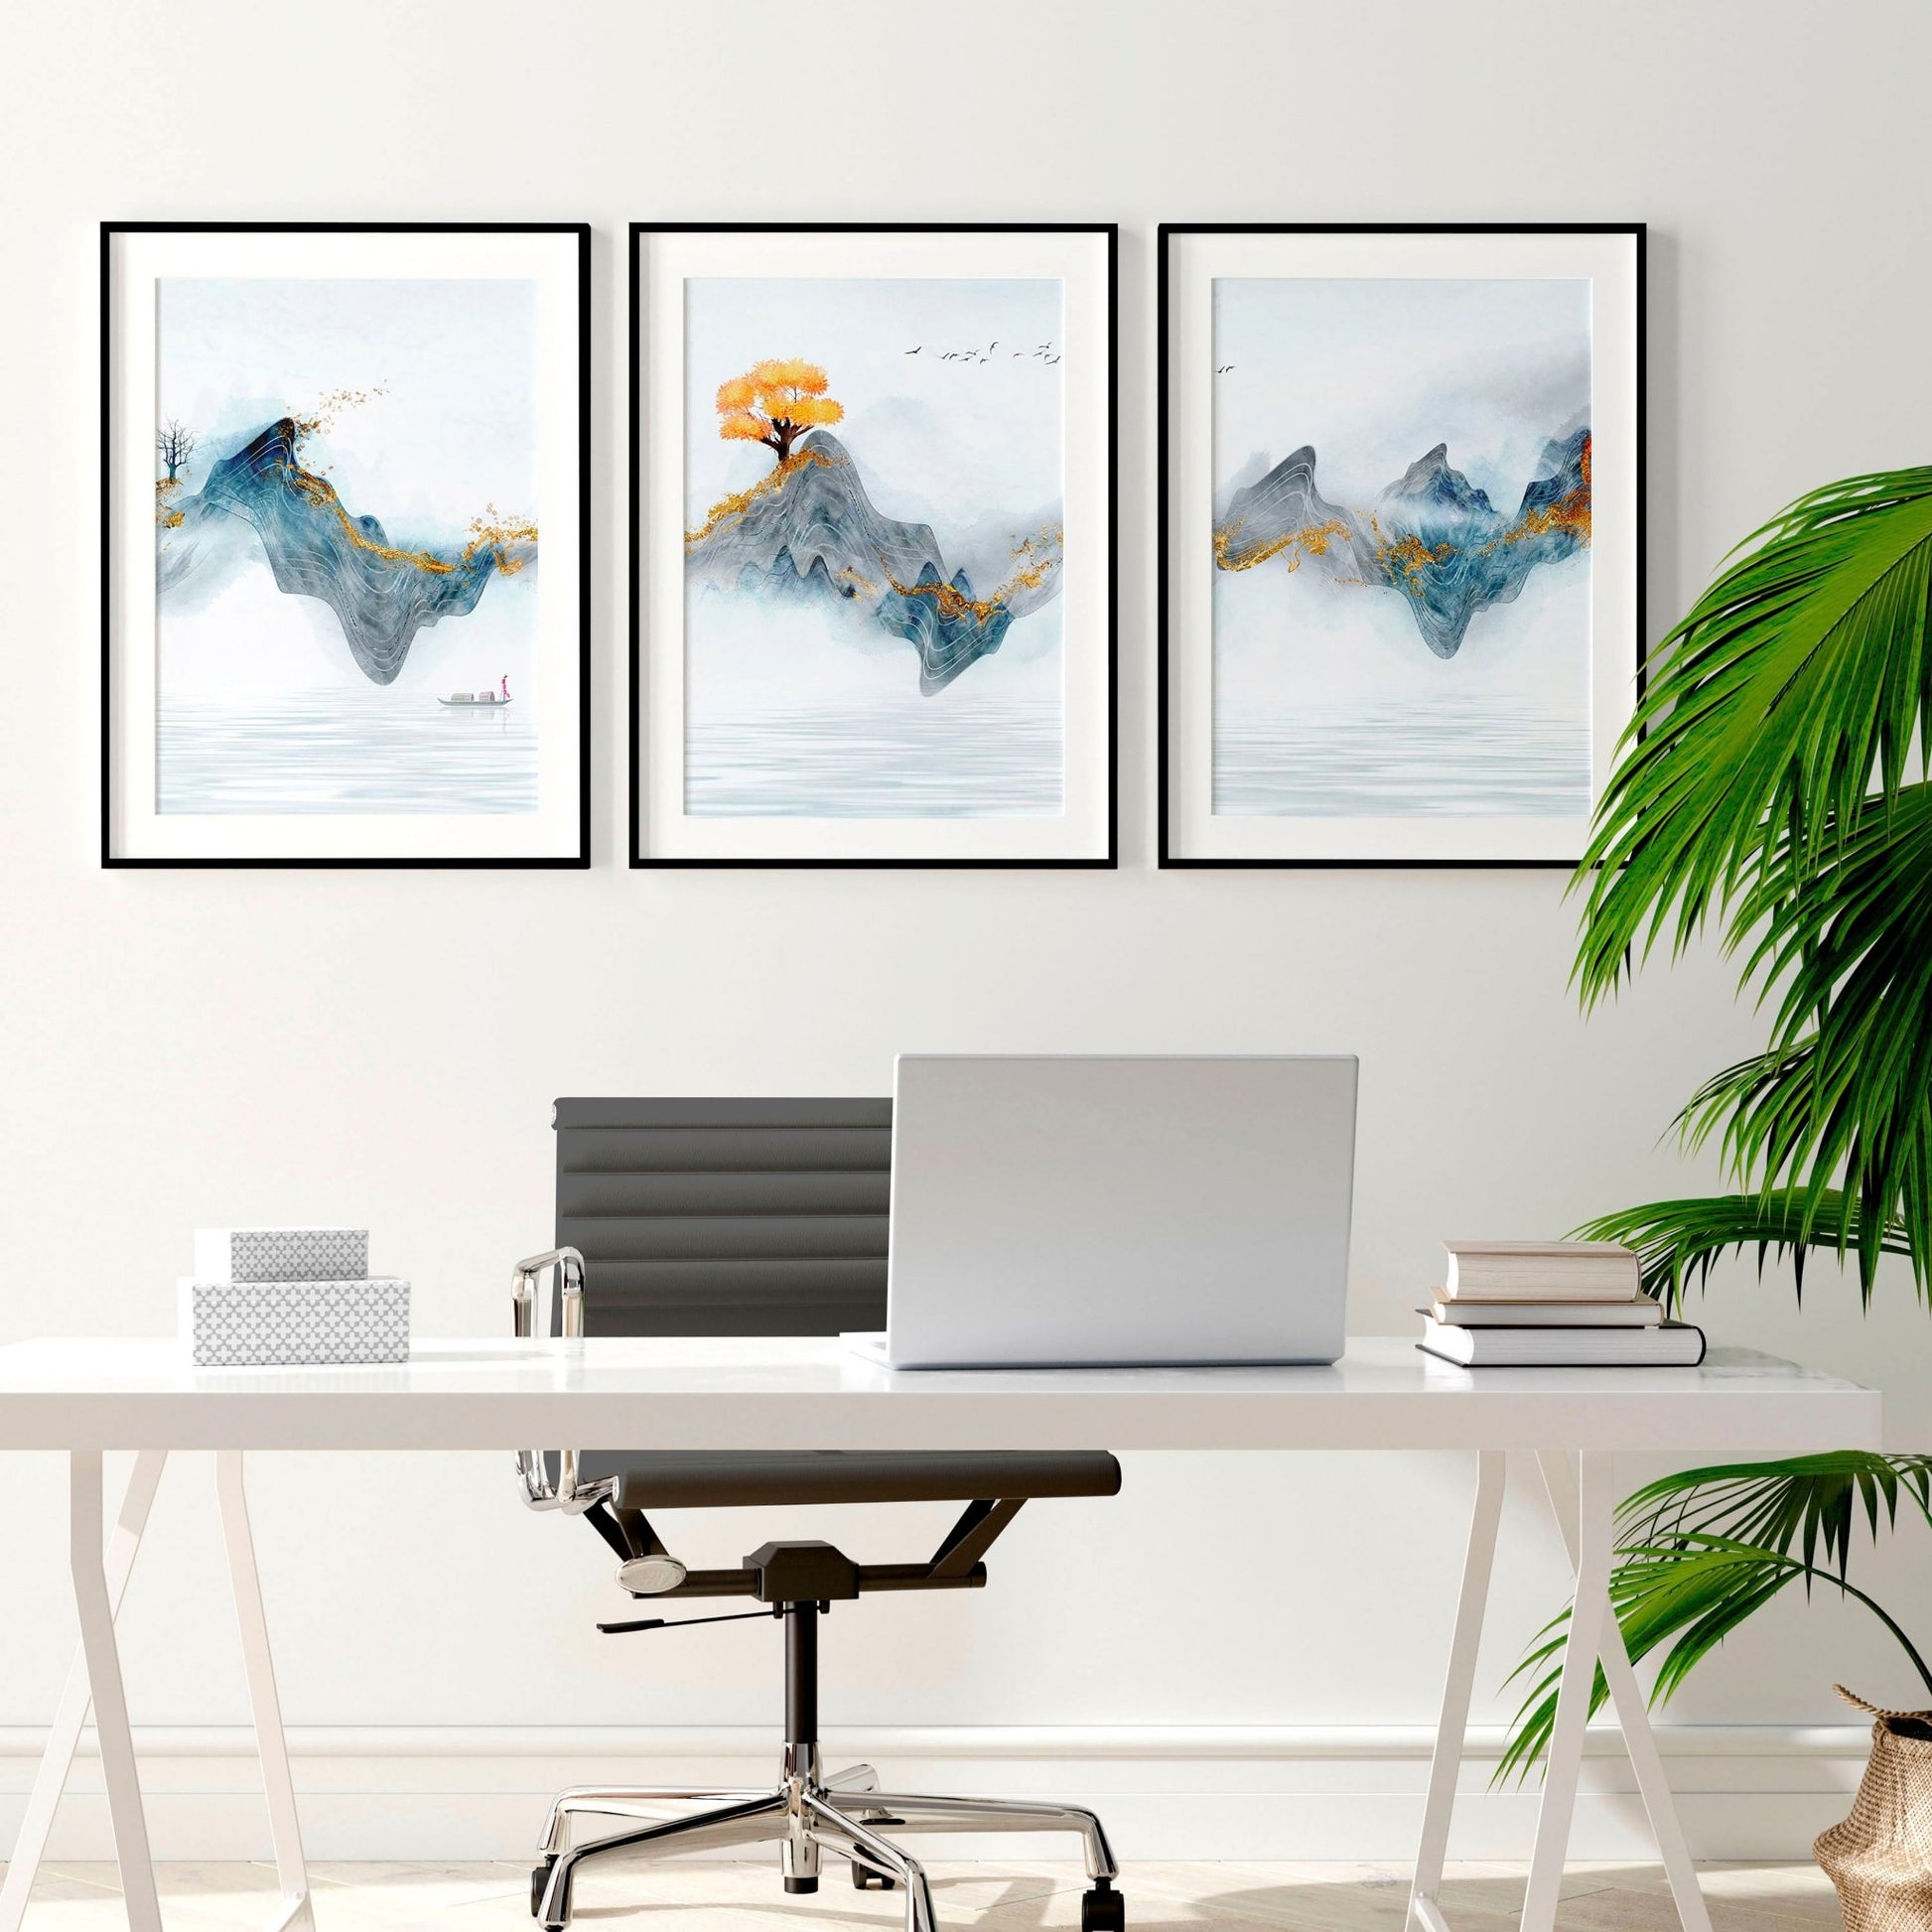 Zen office decor | set of 3 wall art prints - About Wall Art